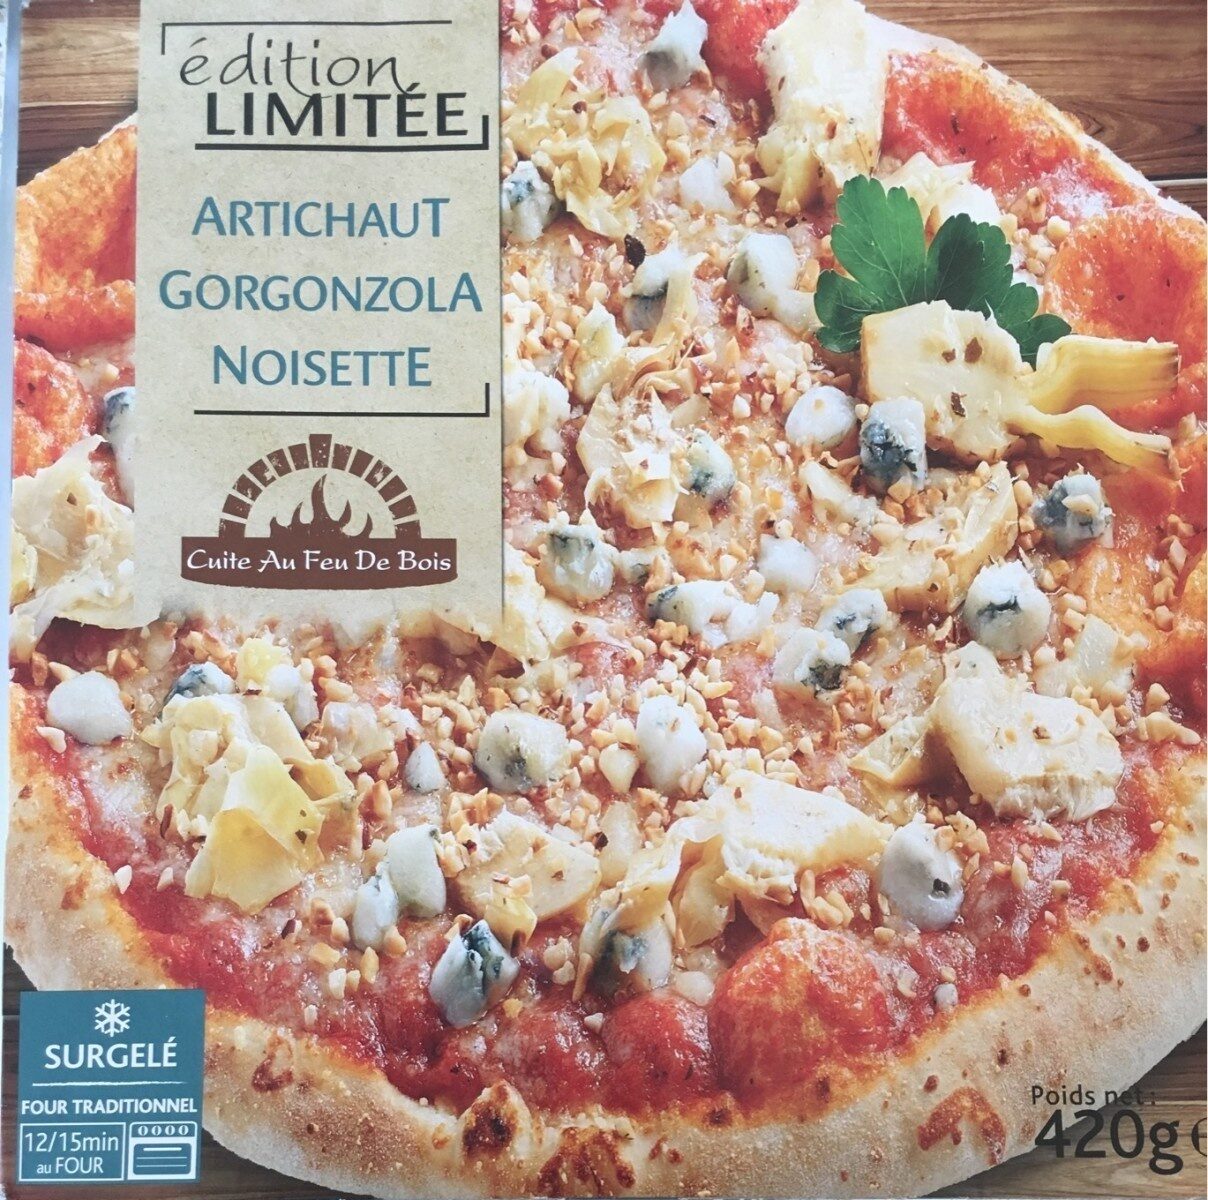 Artichaut gorgonzola noisette - Product - fr